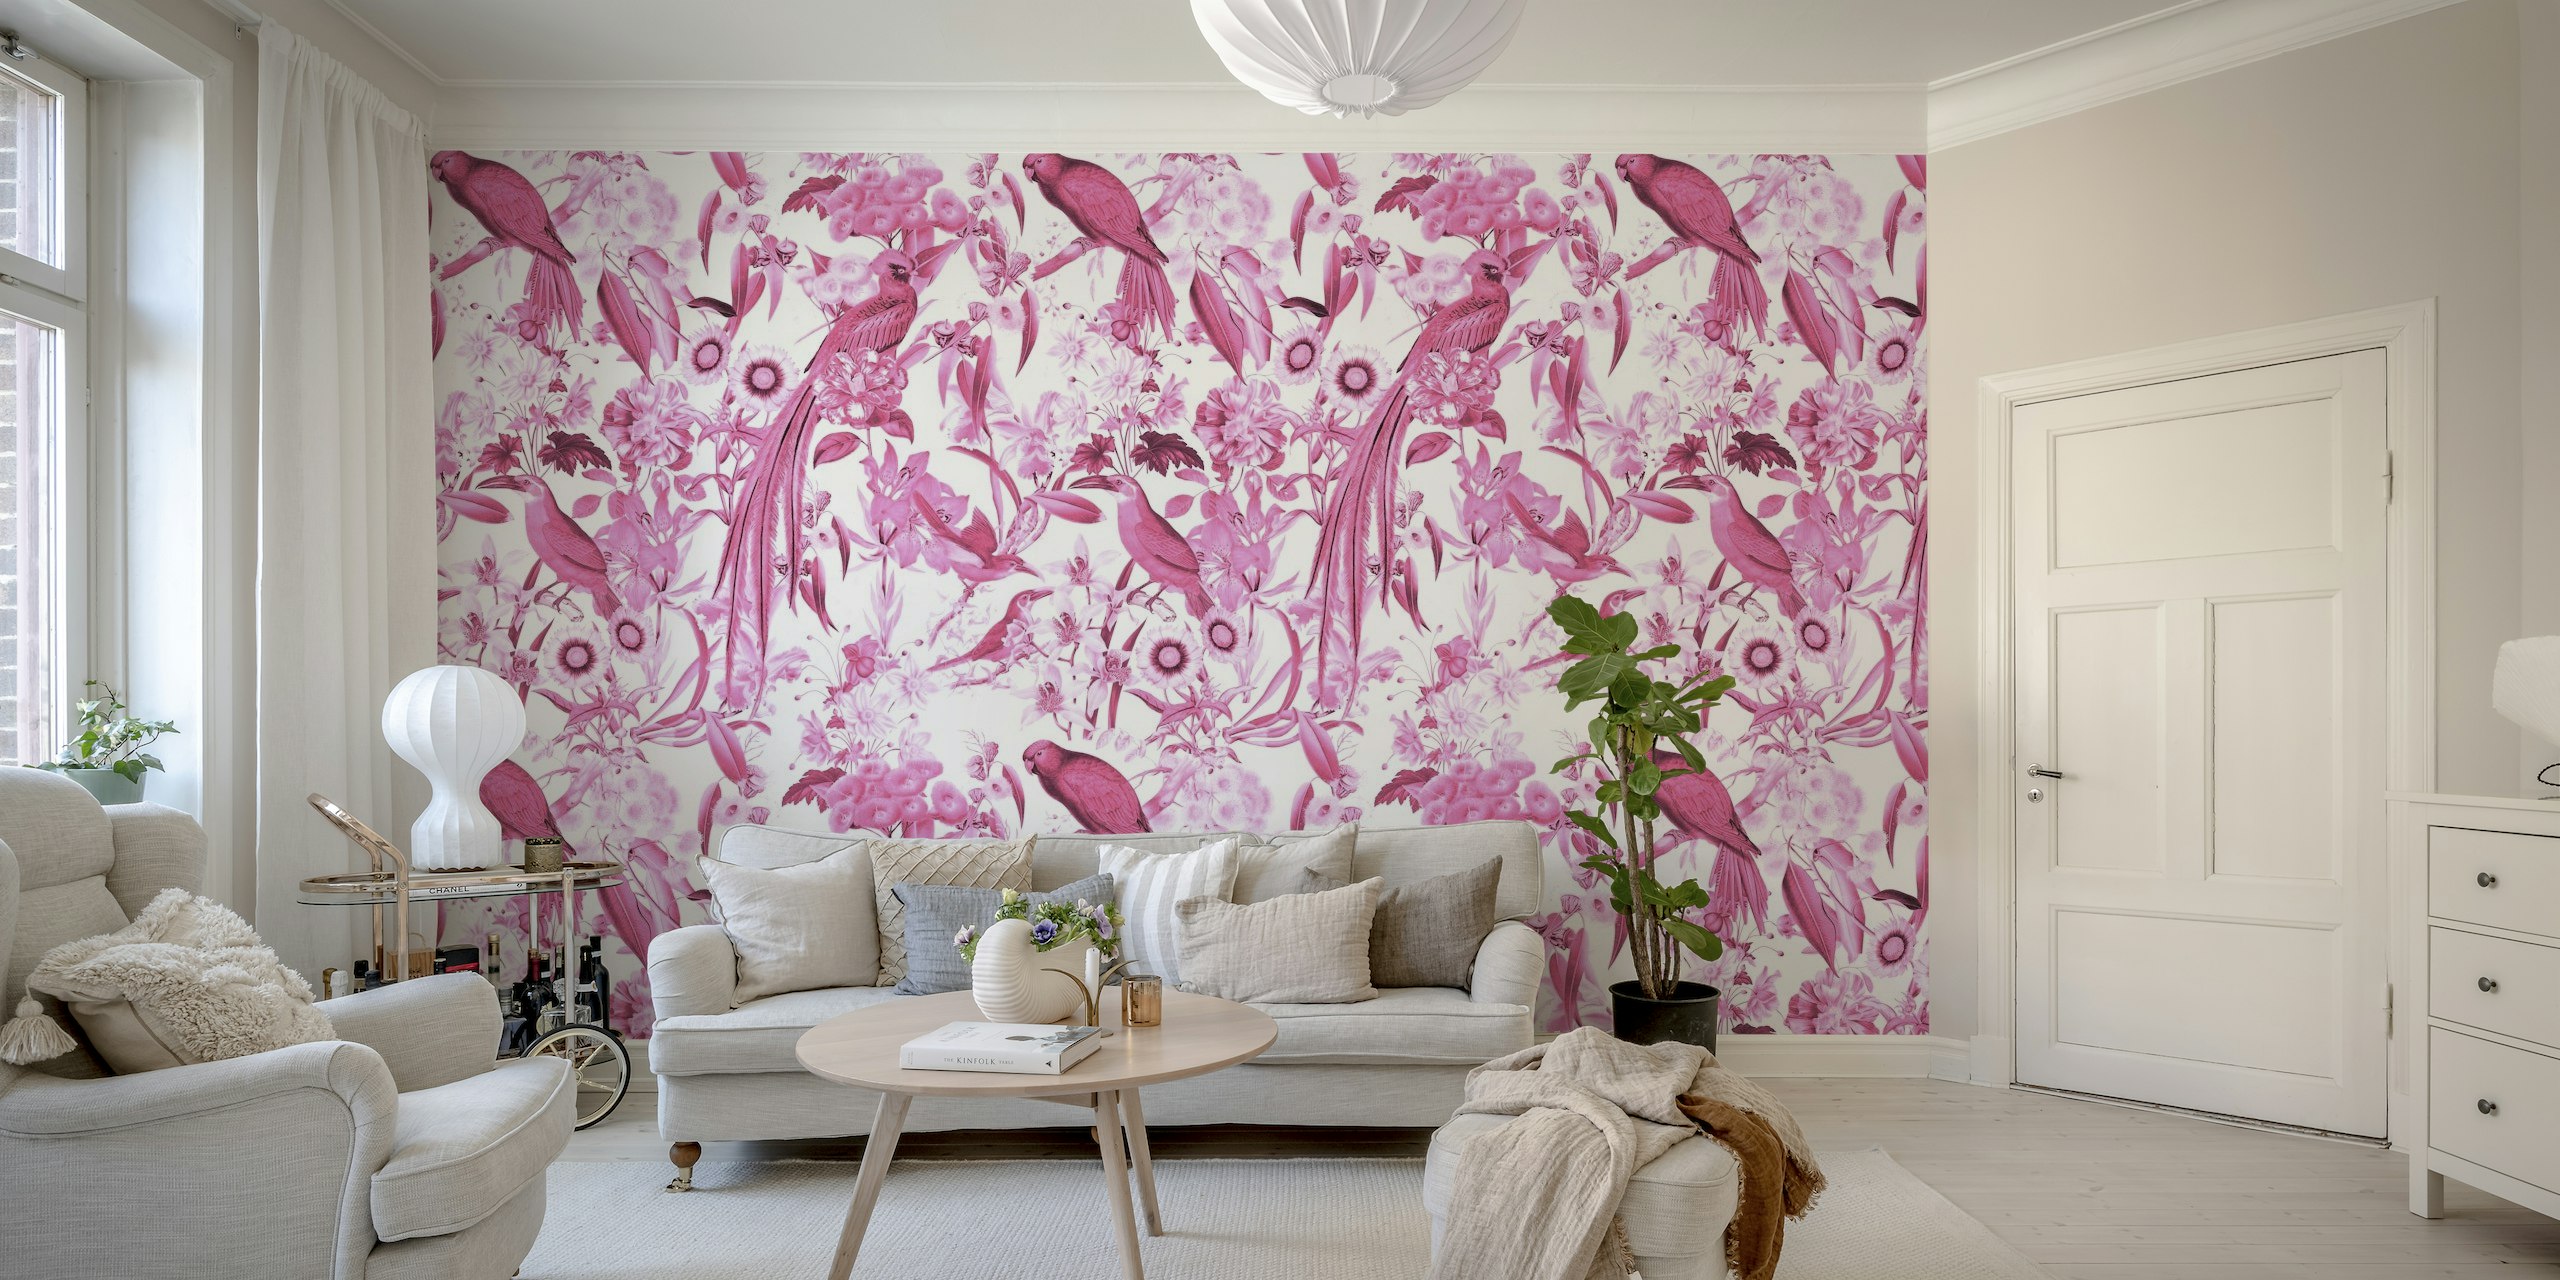 Delia Silvae zidna slika s ružičastim tropskim pticama i florom